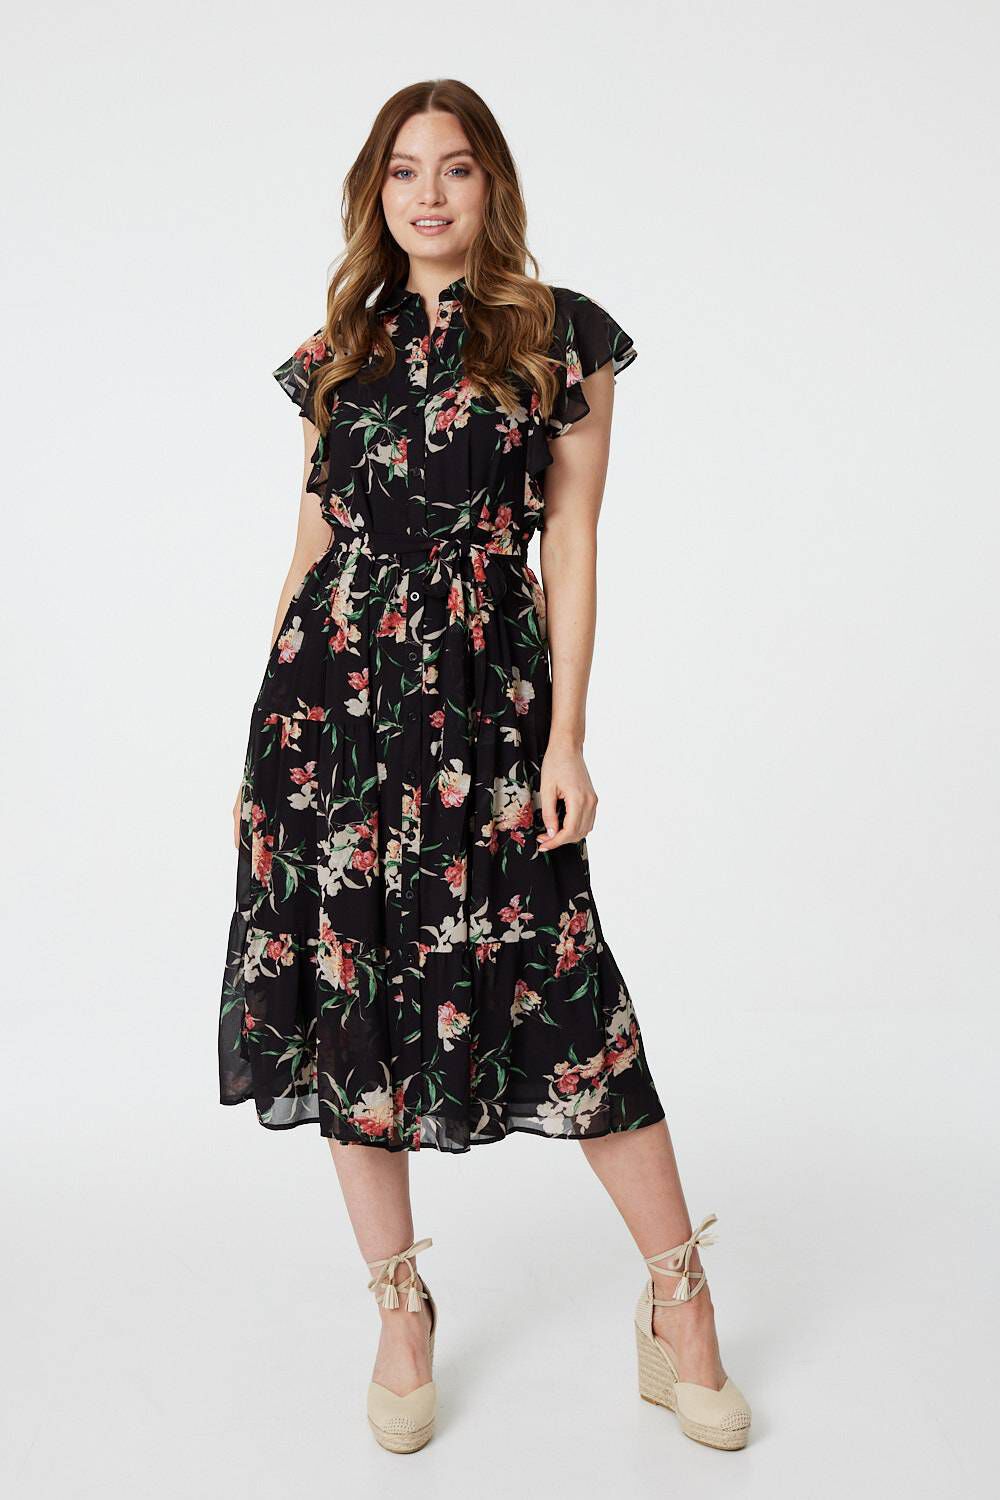 Izabel London Black - Floral Angel Sleeve Shirt Dress, Size: 12